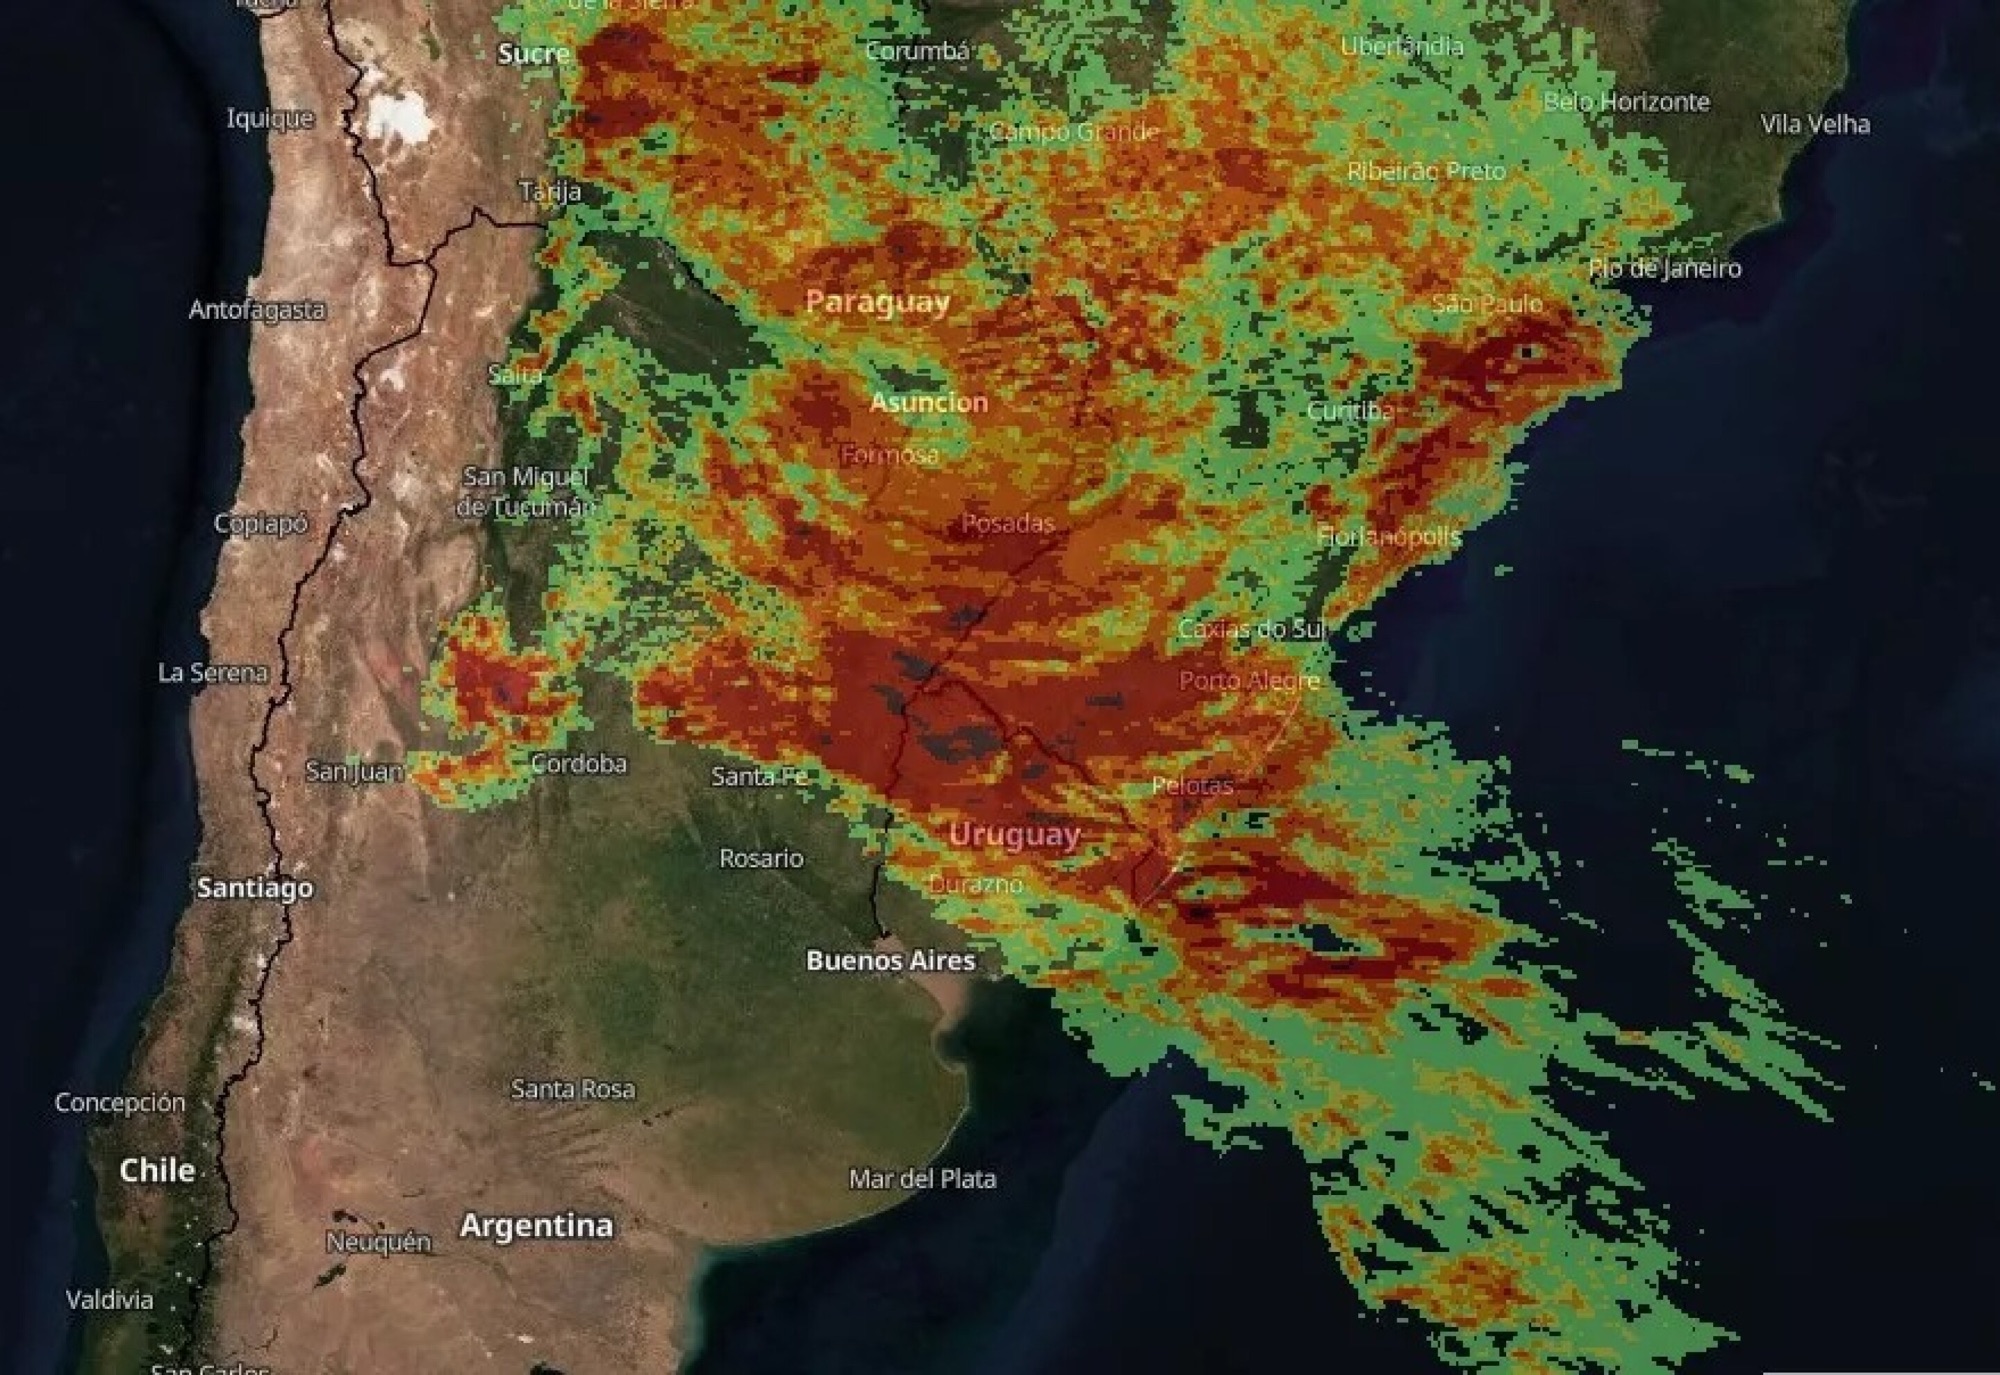 Metsul advierte por «fuertes lluvias y vendavales» desde este miércoles en Uruguay